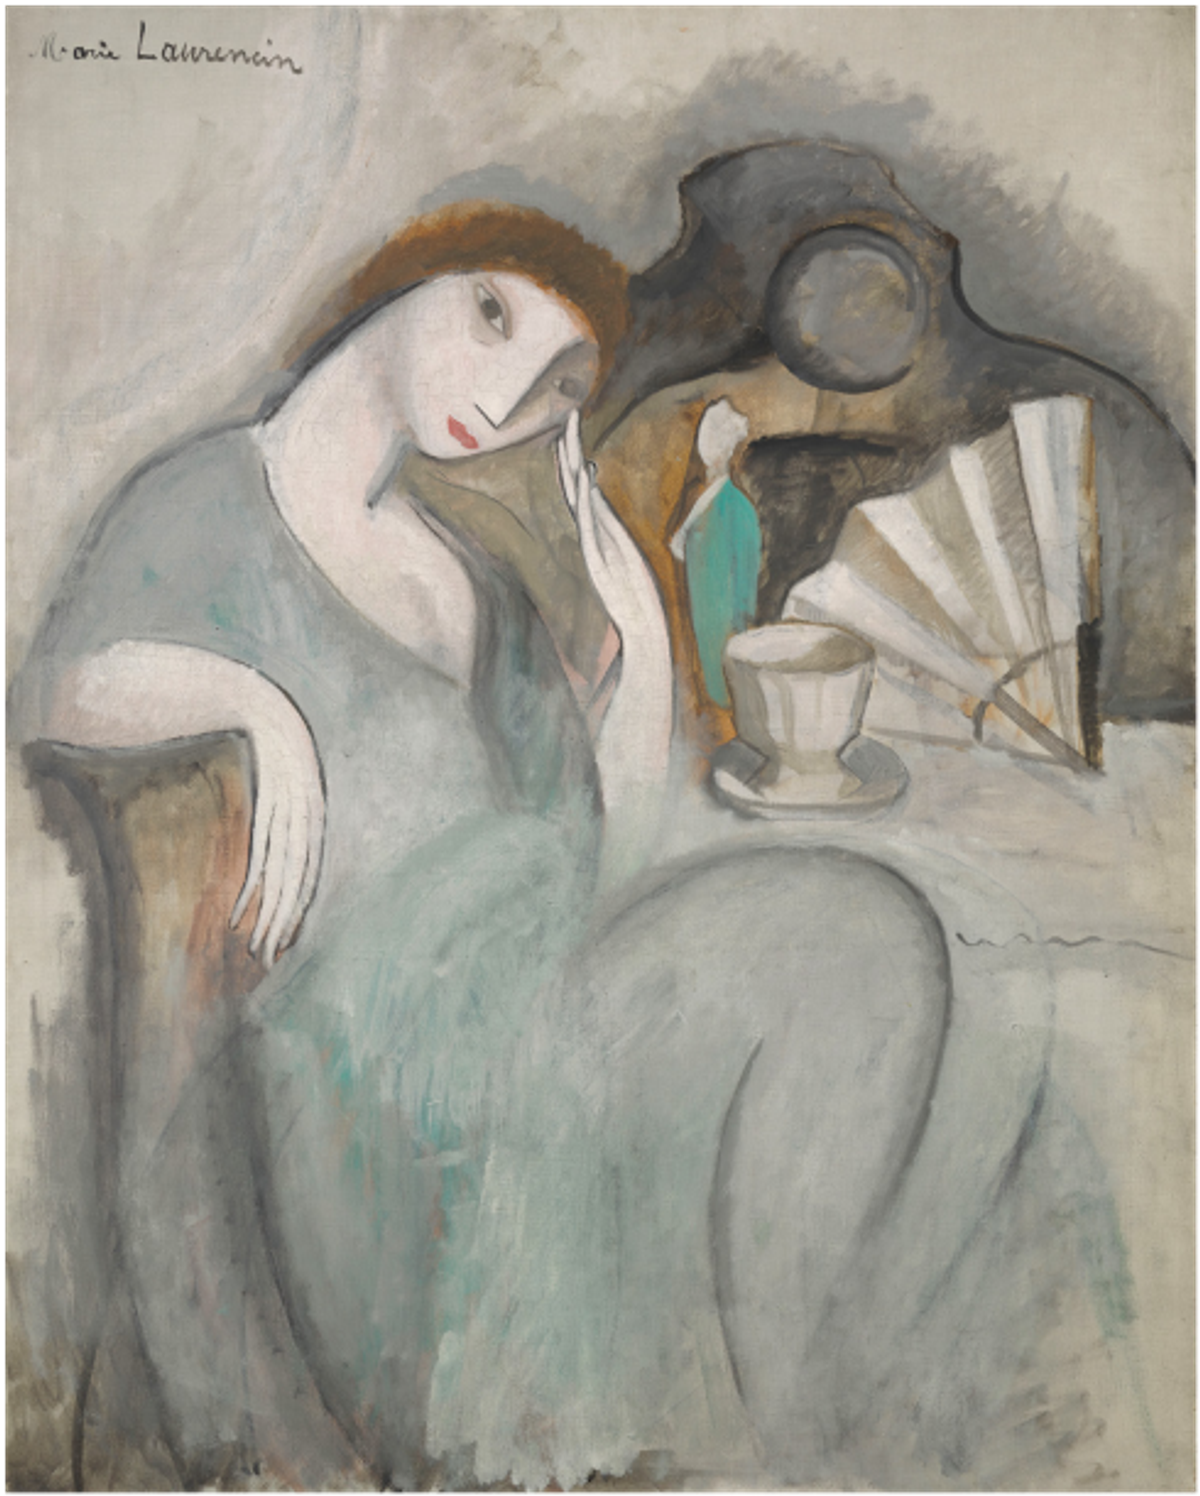 Marie Laurencin, La Songeuse, 1910-1911, huile sur toile, Musée national
Picasso-Paris. © Fondation Foujita. Photo RMN-Grand Palais (Musée national Picasso-Paris)/Adrien Didierjean